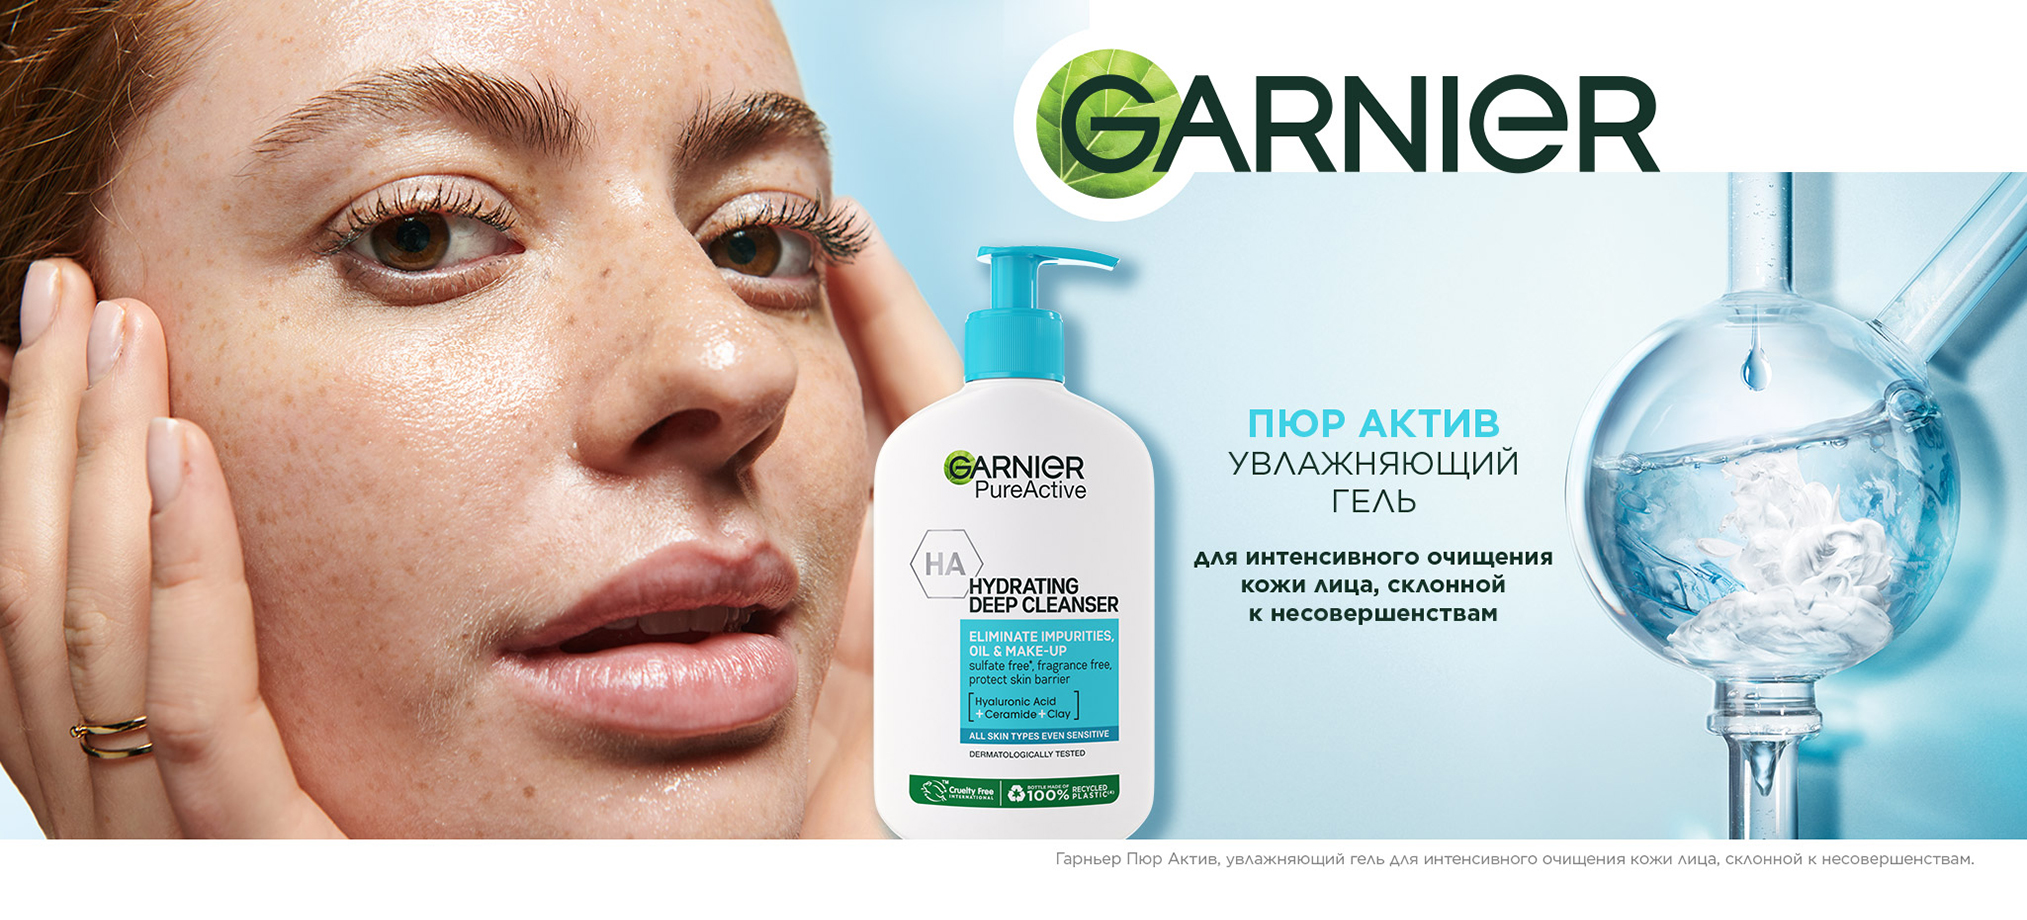 Увлажняющий гель для интенсивного очищения кожи лица, склонной к недостаткам - Garnier Pure Active Hydrating Deep Cleanser